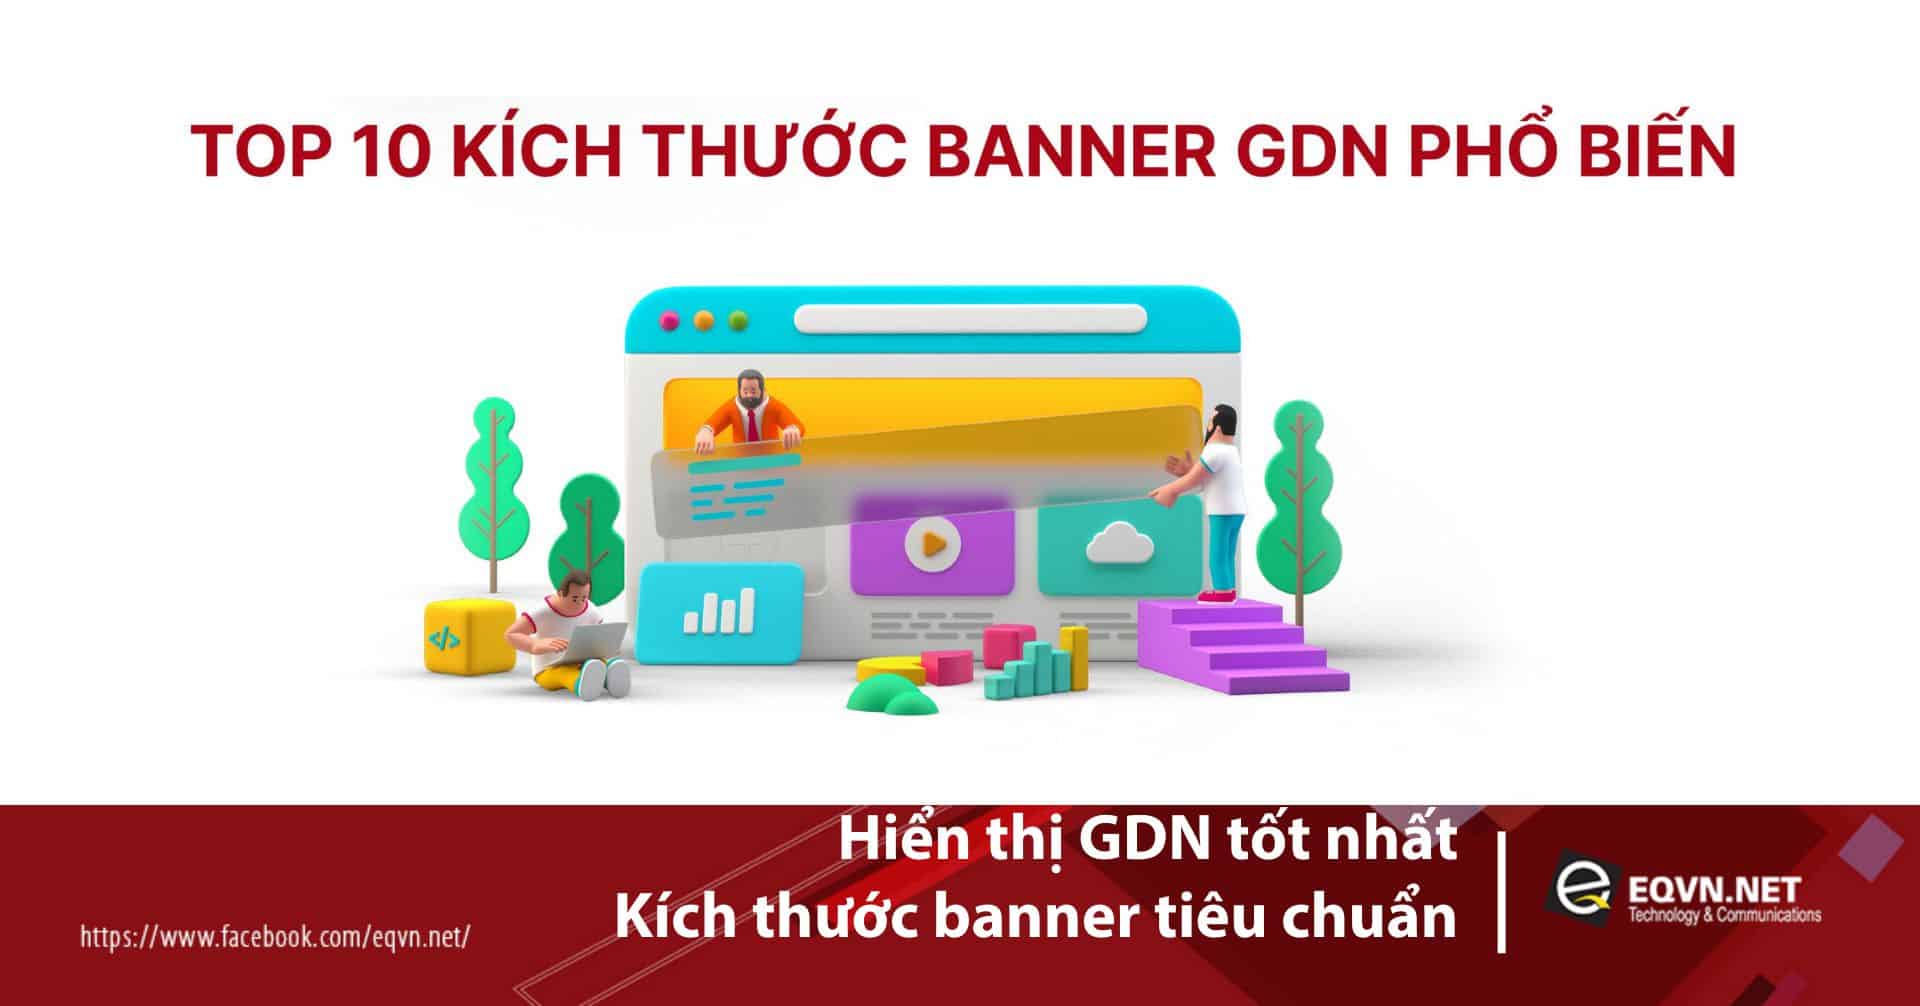 Hiển thị GDN tốt nhất: kích thước banner tiêu chuẩn